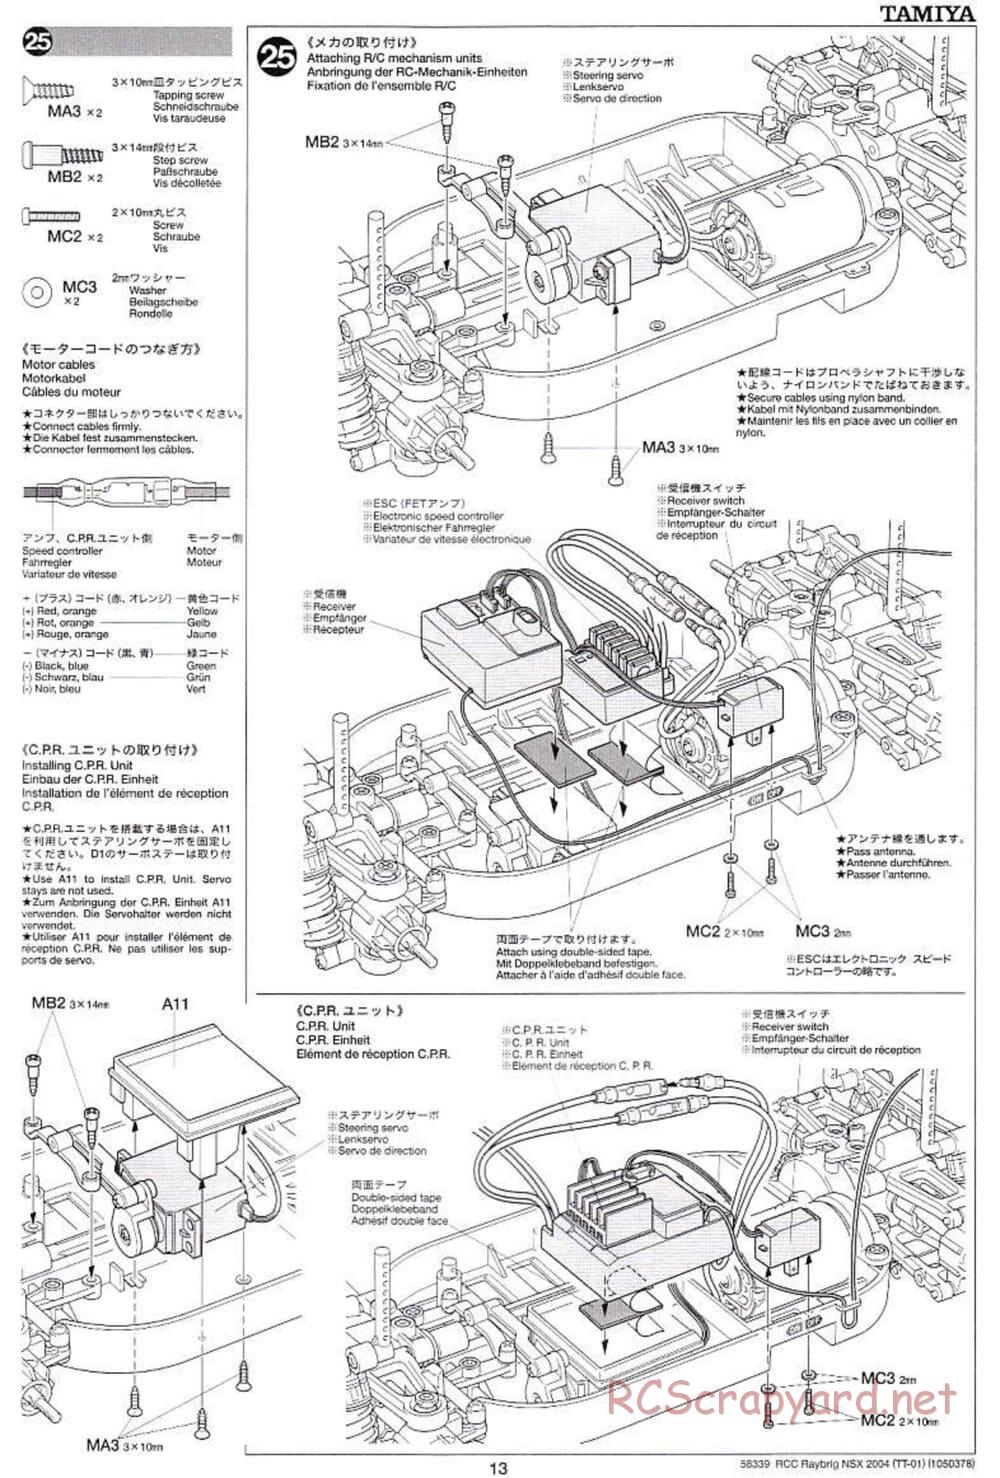 Tamiya - Raybrig NSX 2004 Chassis - Manual - Page 13